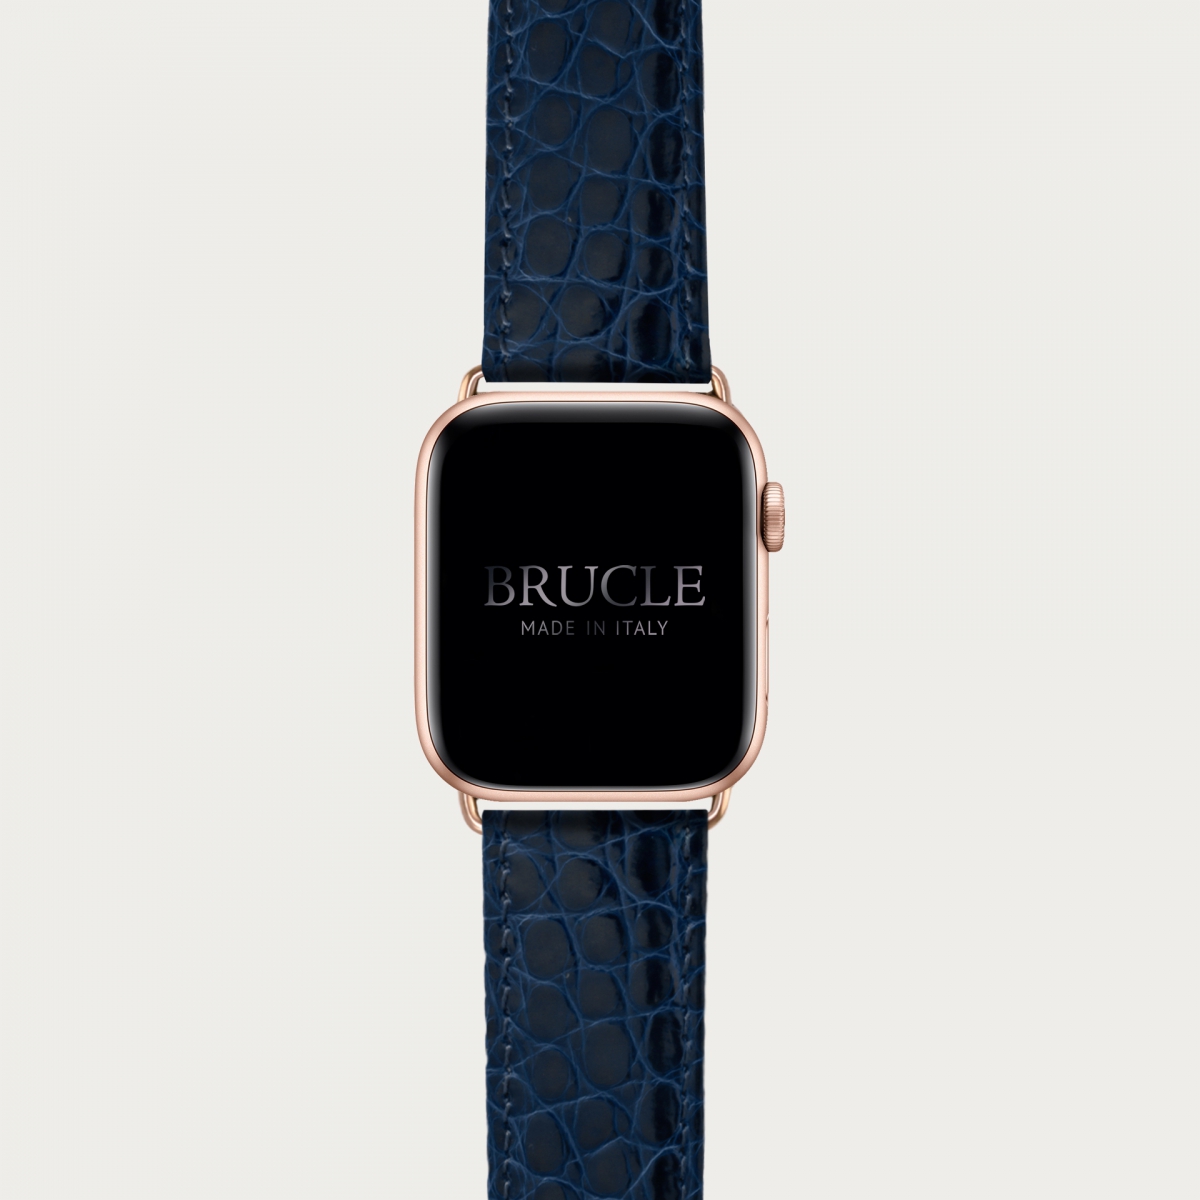 BRUCLE Correa de reloj en genuino caimán compatible con Apple Watch / Samsung smartwatch, navy blue